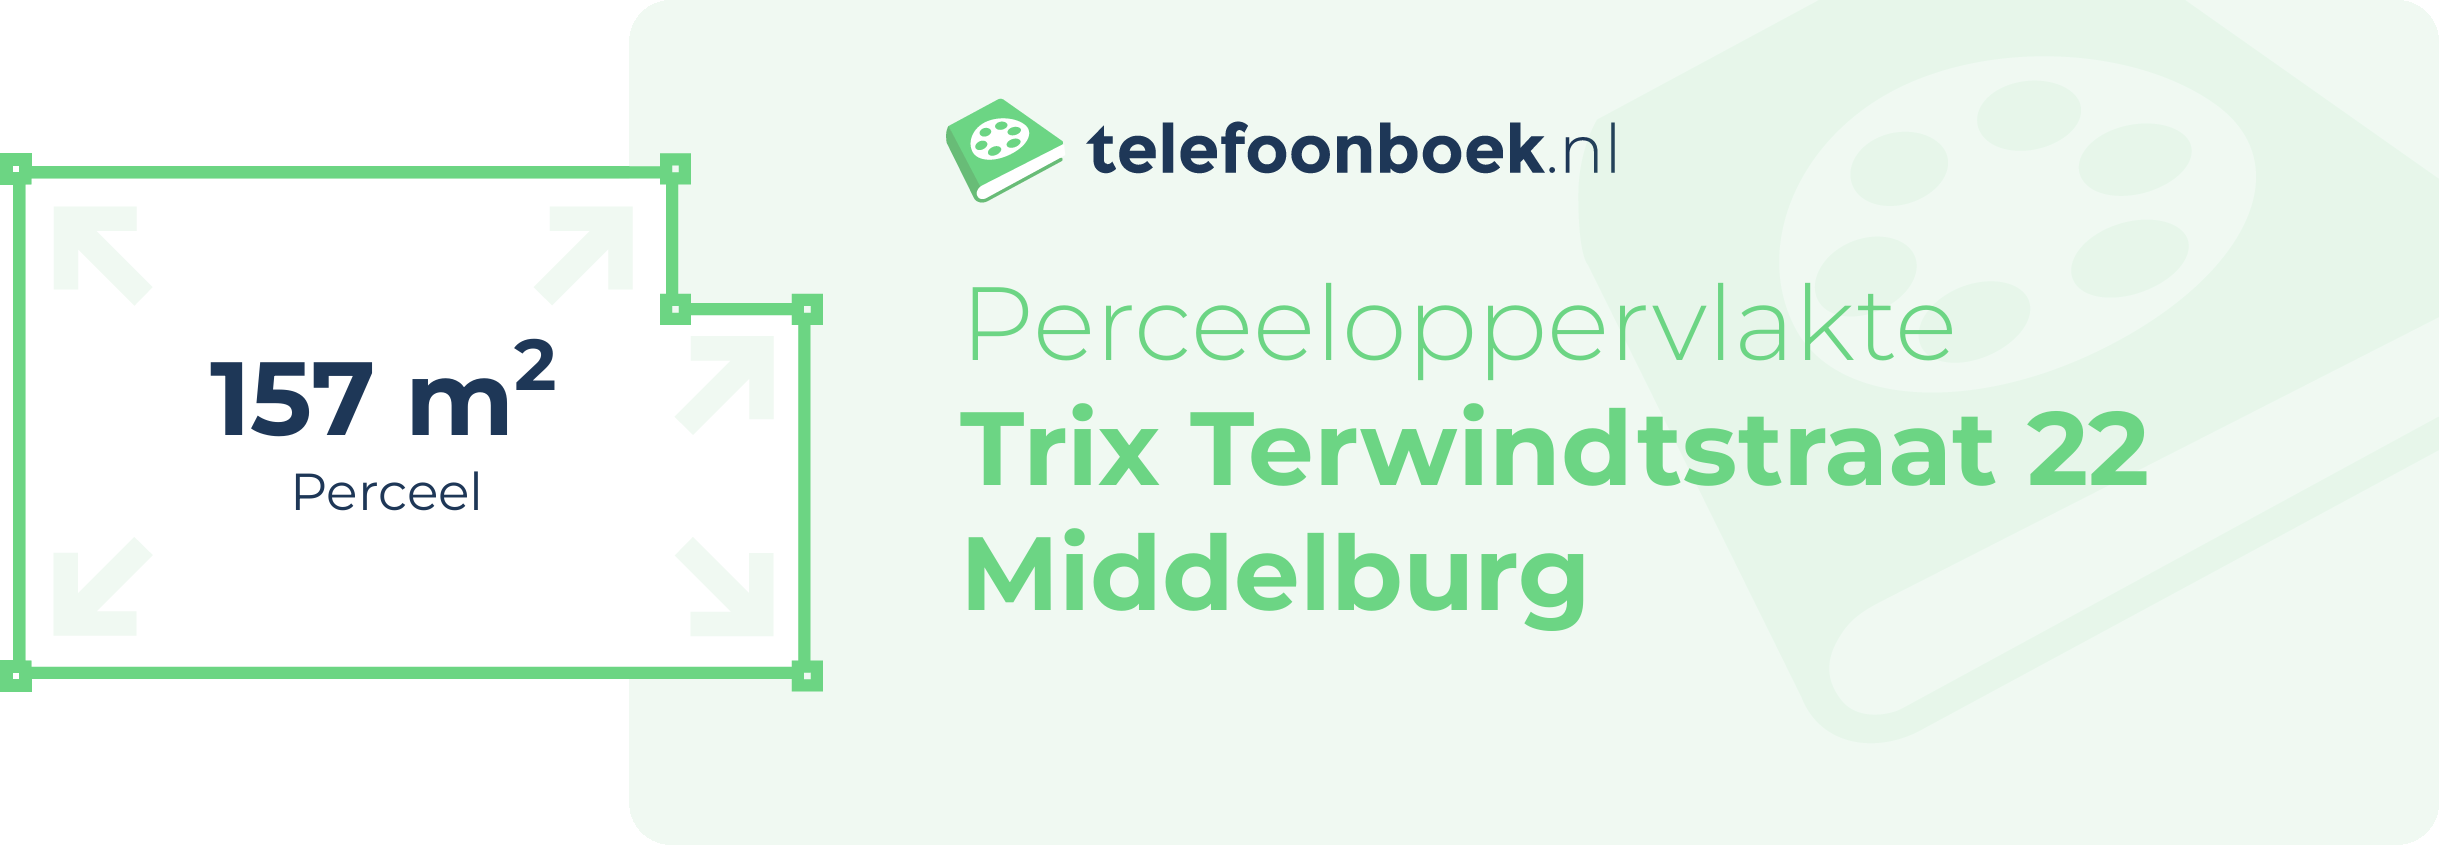 Perceeloppervlakte Trix Terwindtstraat 22 Middelburg